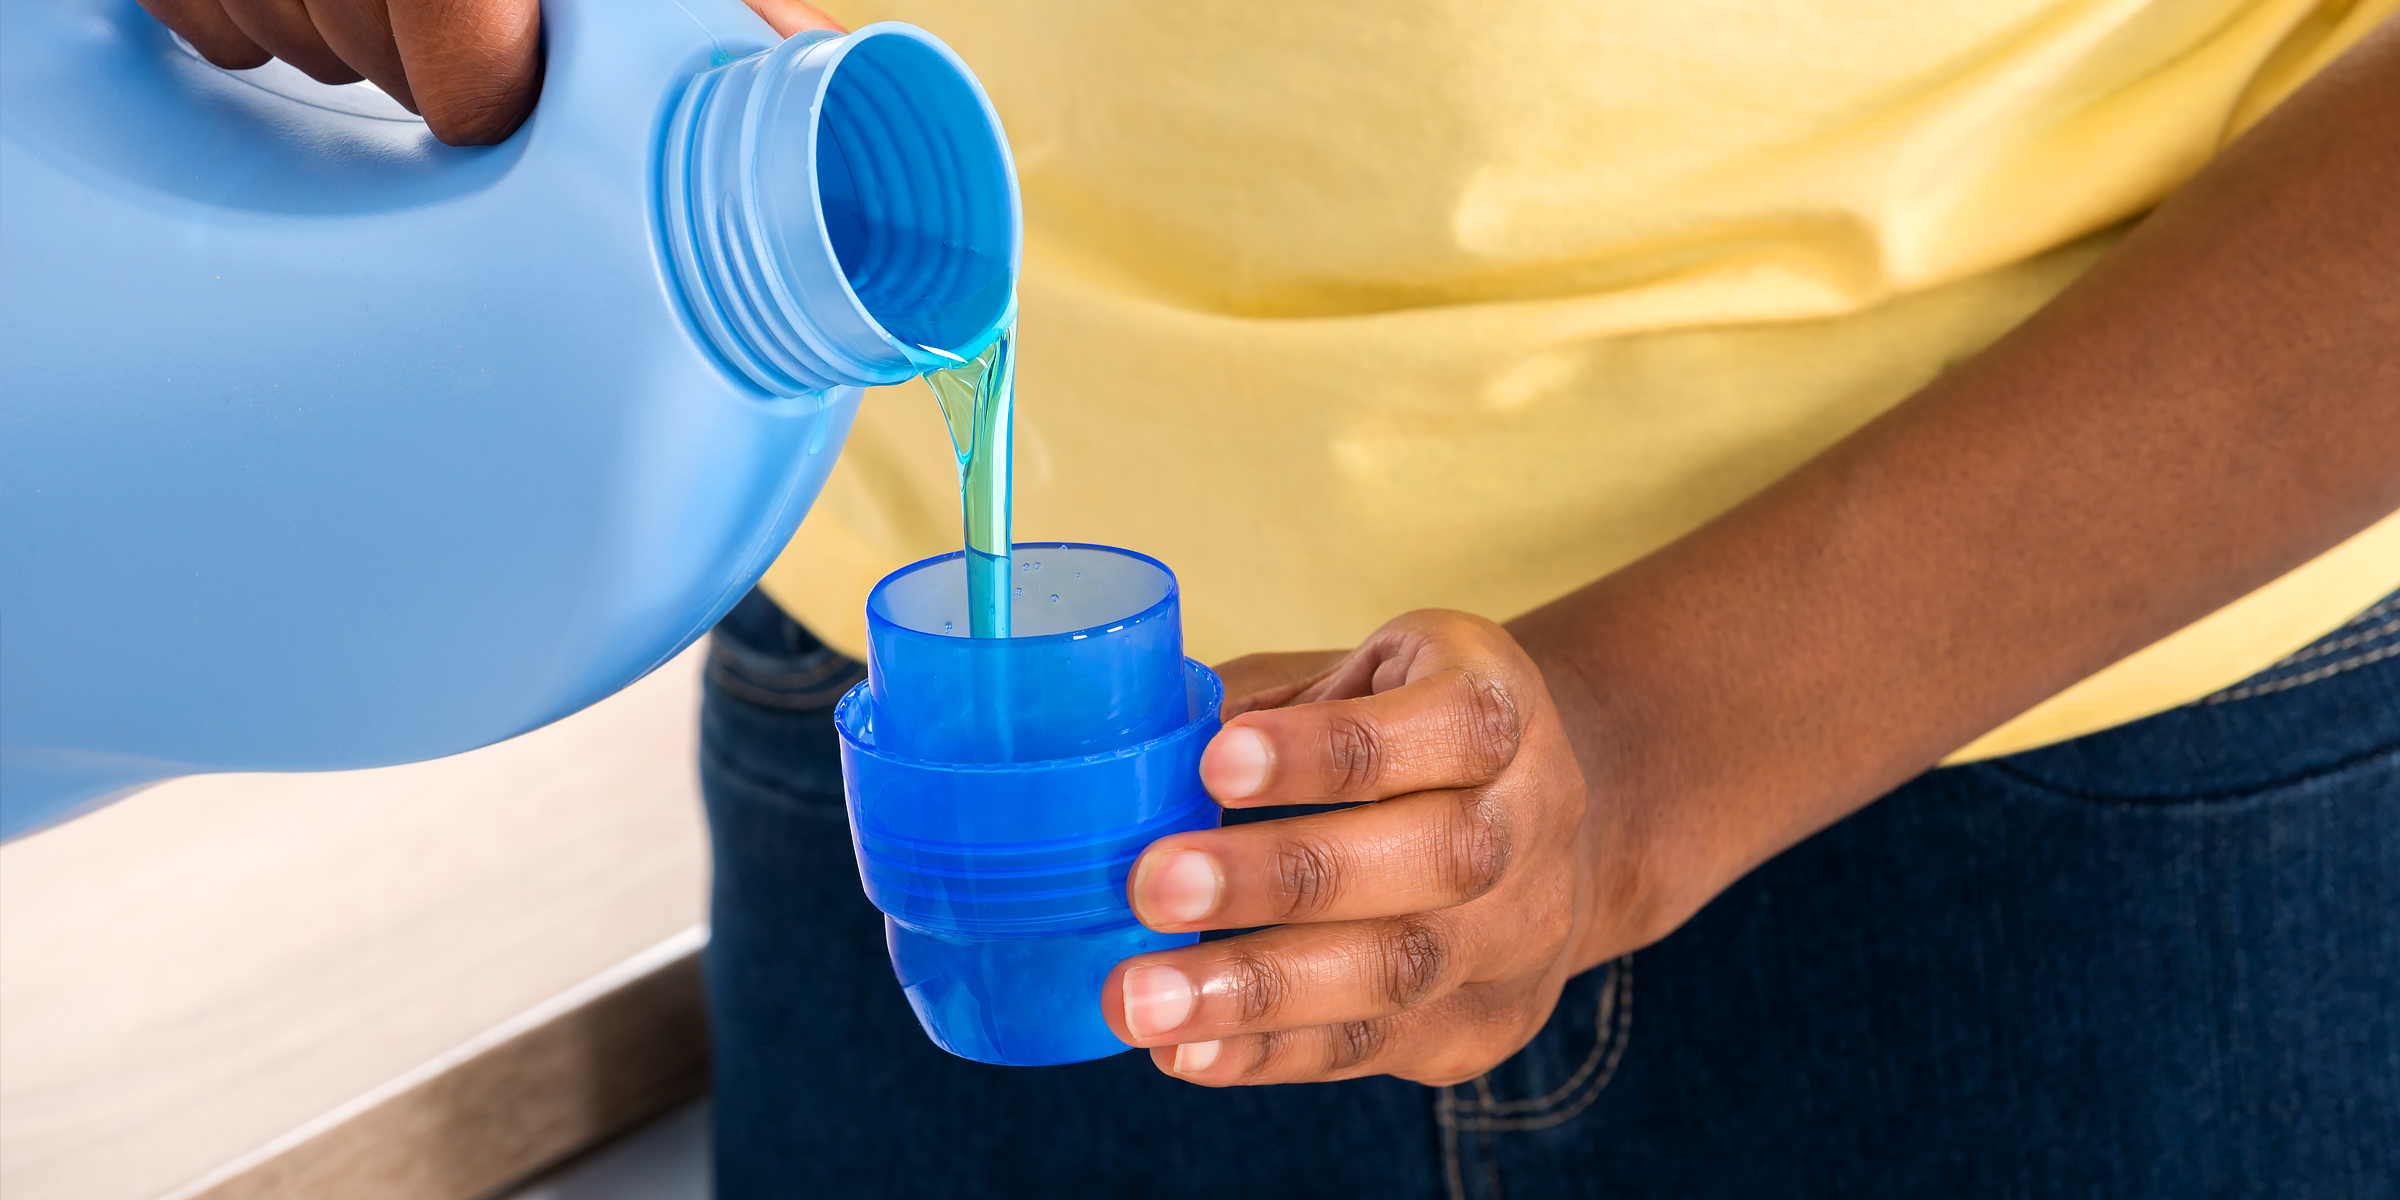 A person using bleach detergent | Source: Shutterstock